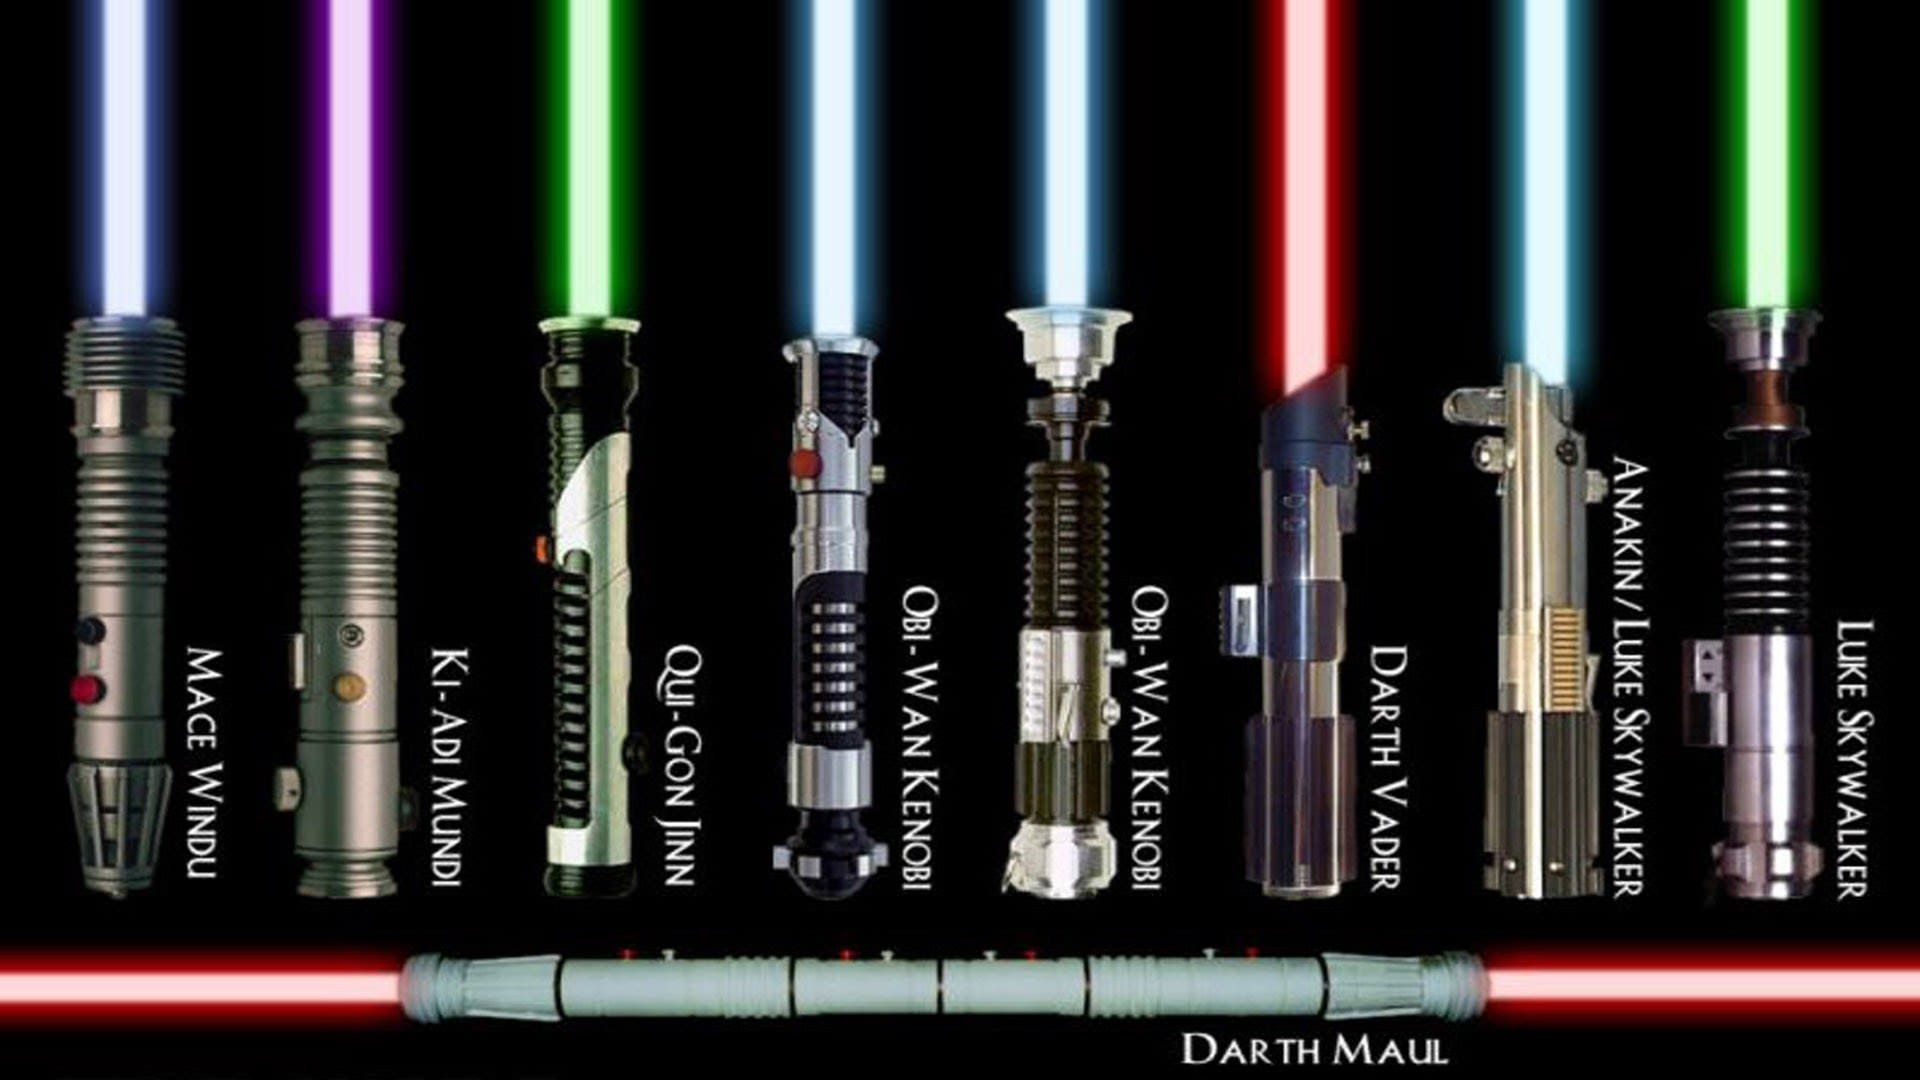 Star Wars High Resolution Wallpaper. Star wars light saber, Lightsaber colors, Lightsaber